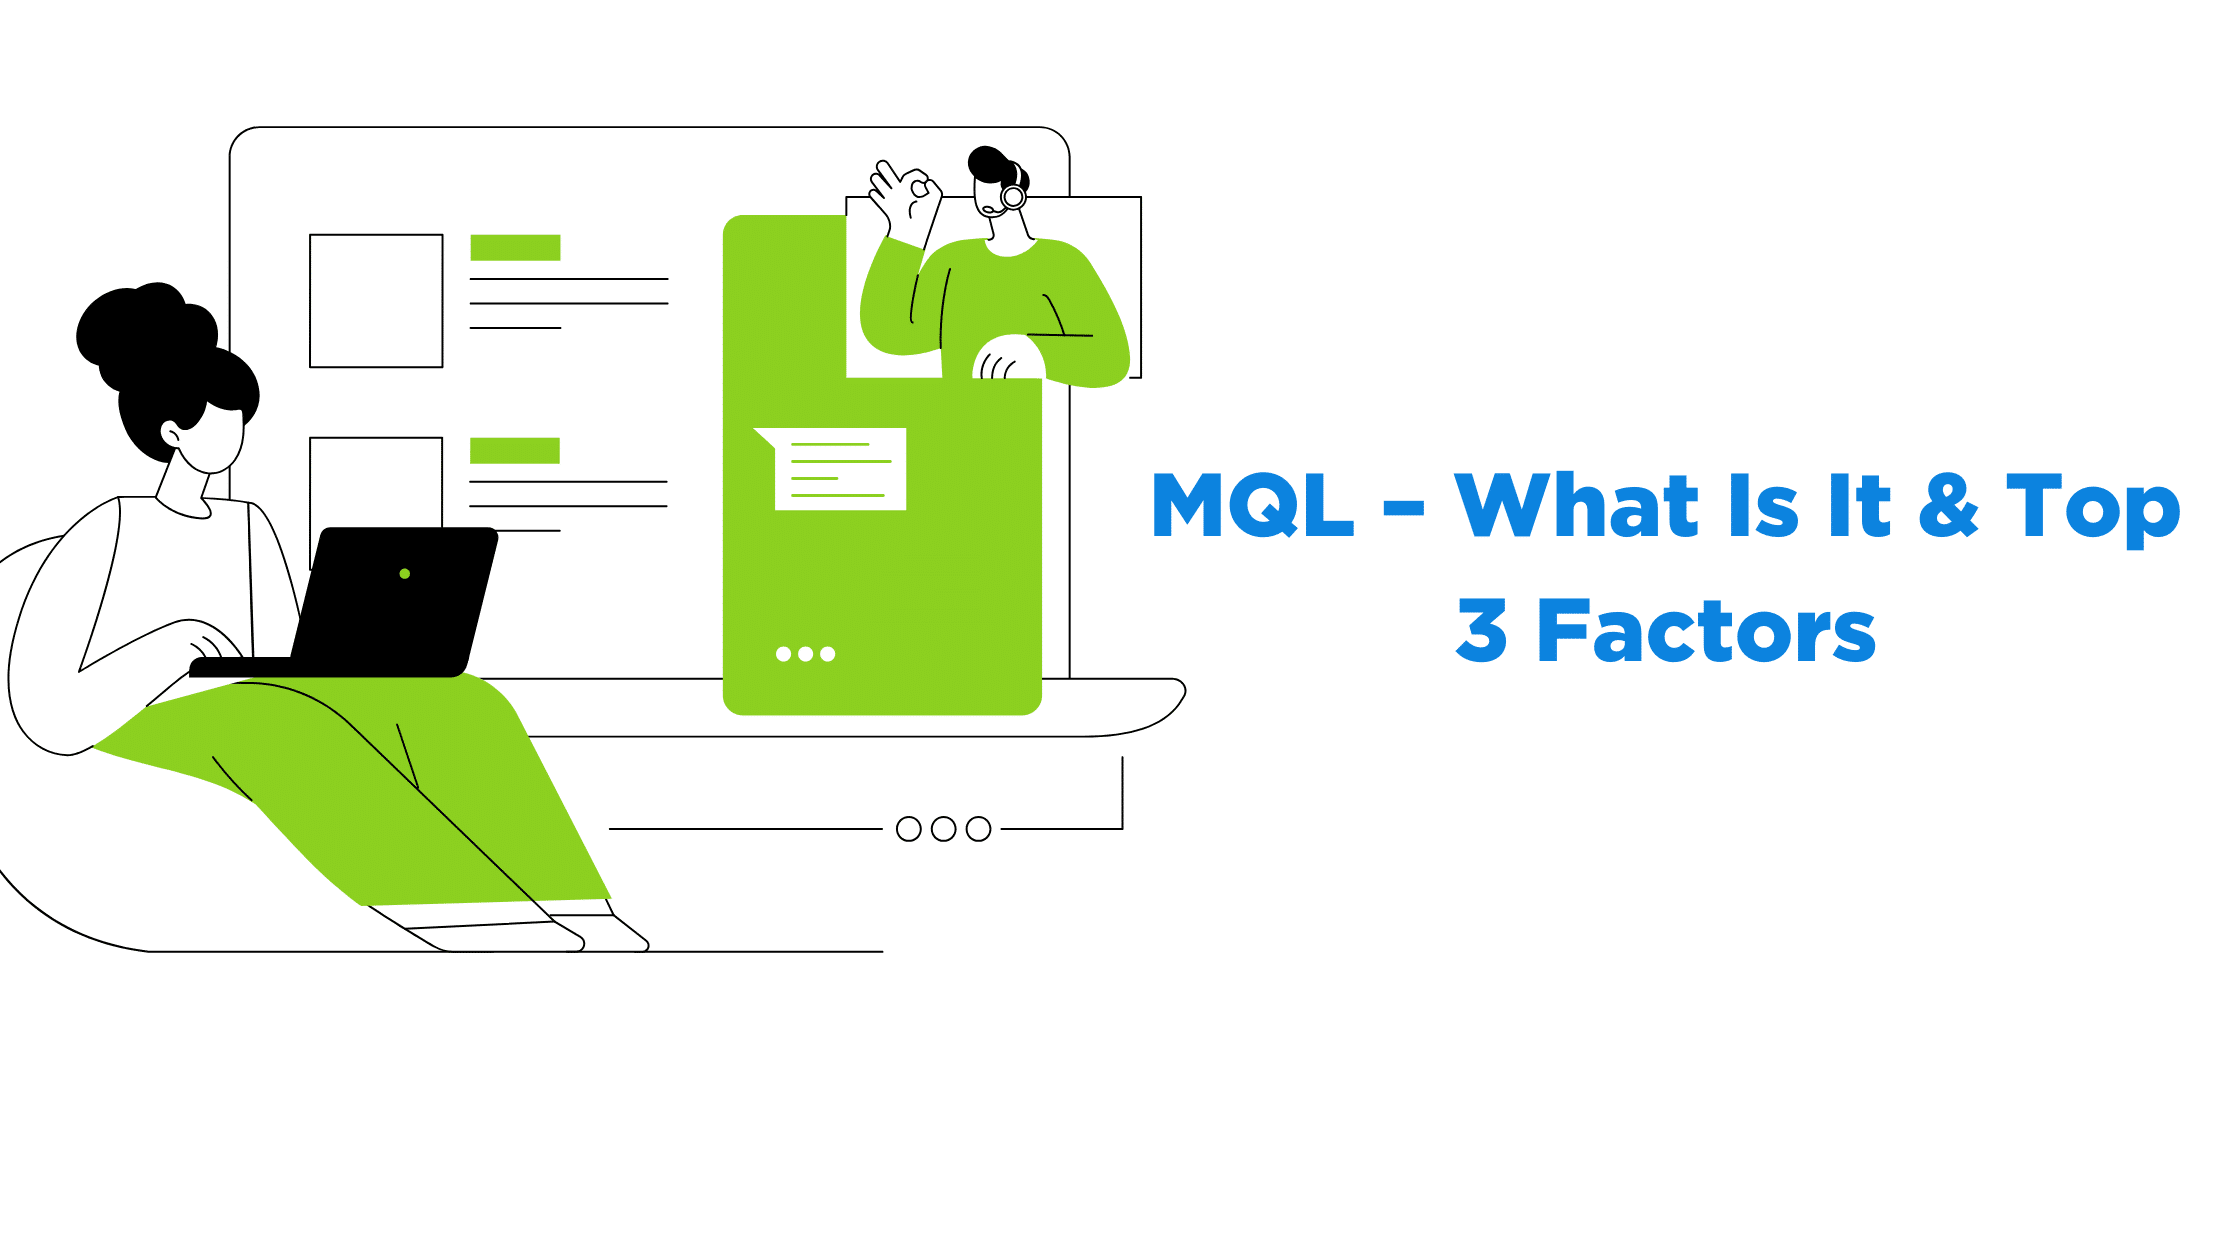 MQL – What Is It & Top 3 Factors